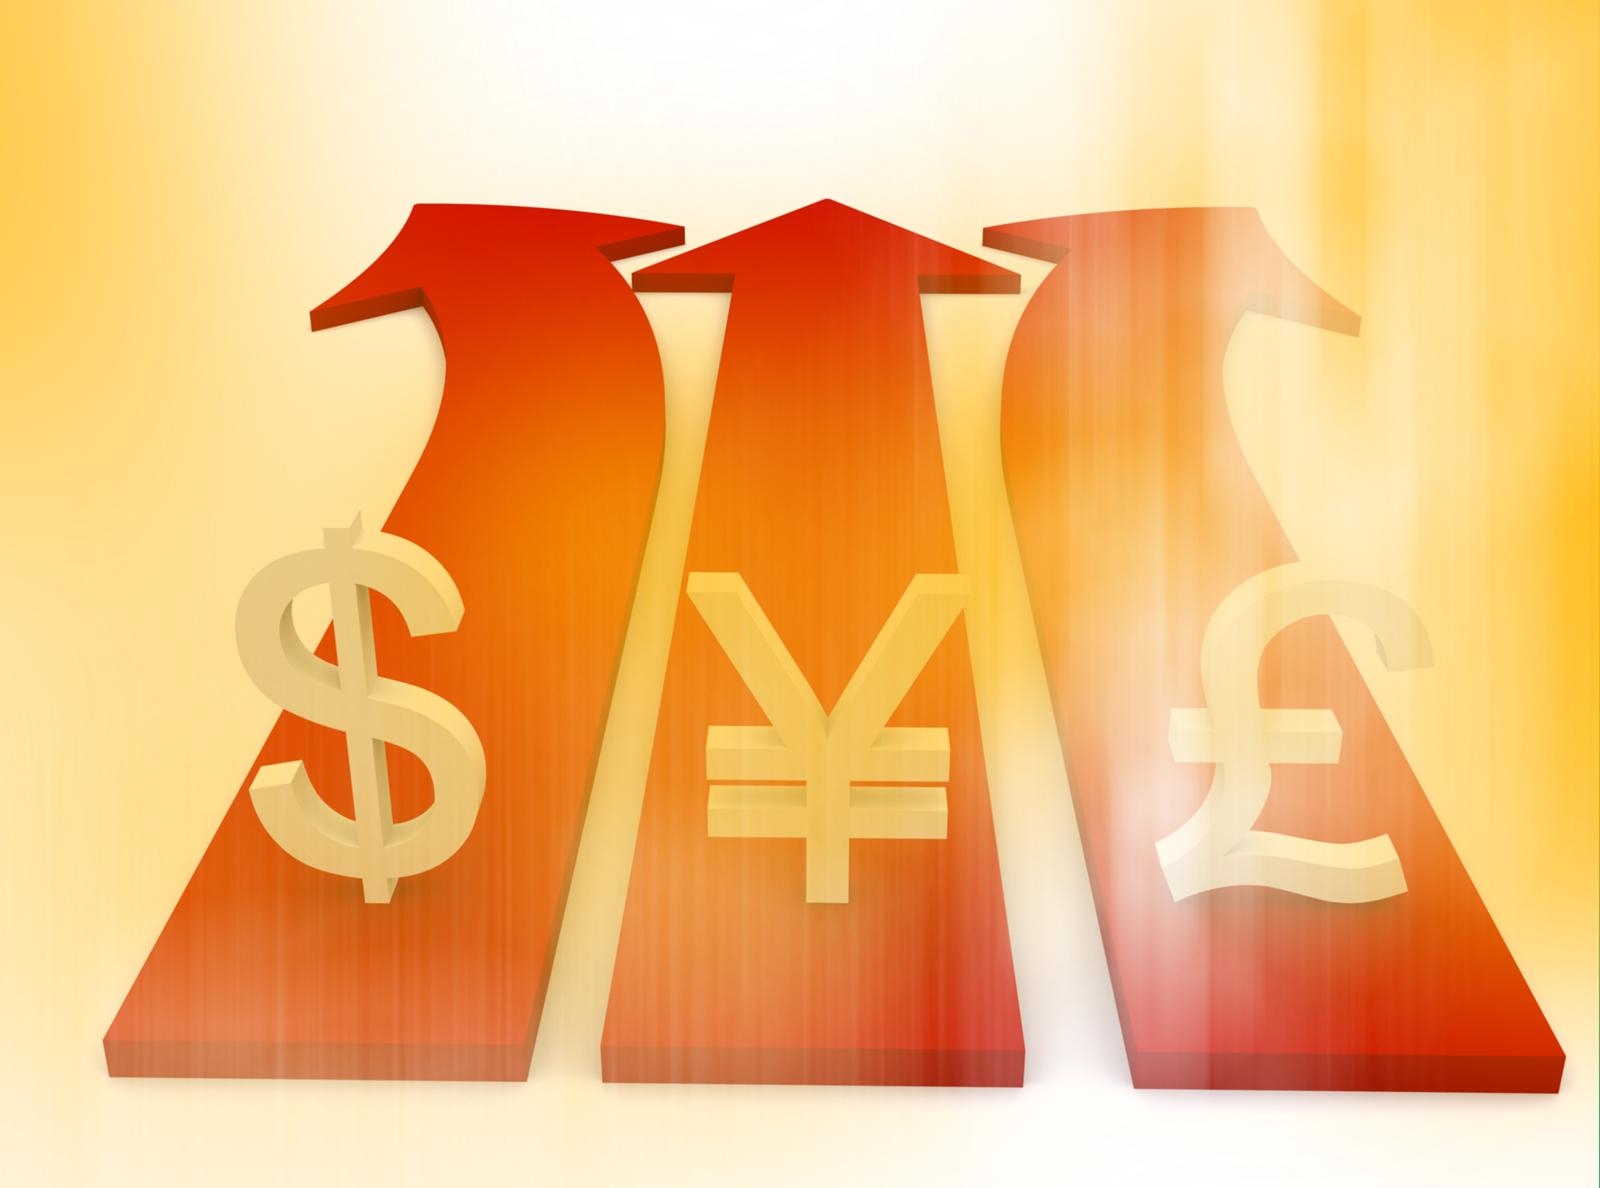 йена входит в тройку наиболее торгуемых валют